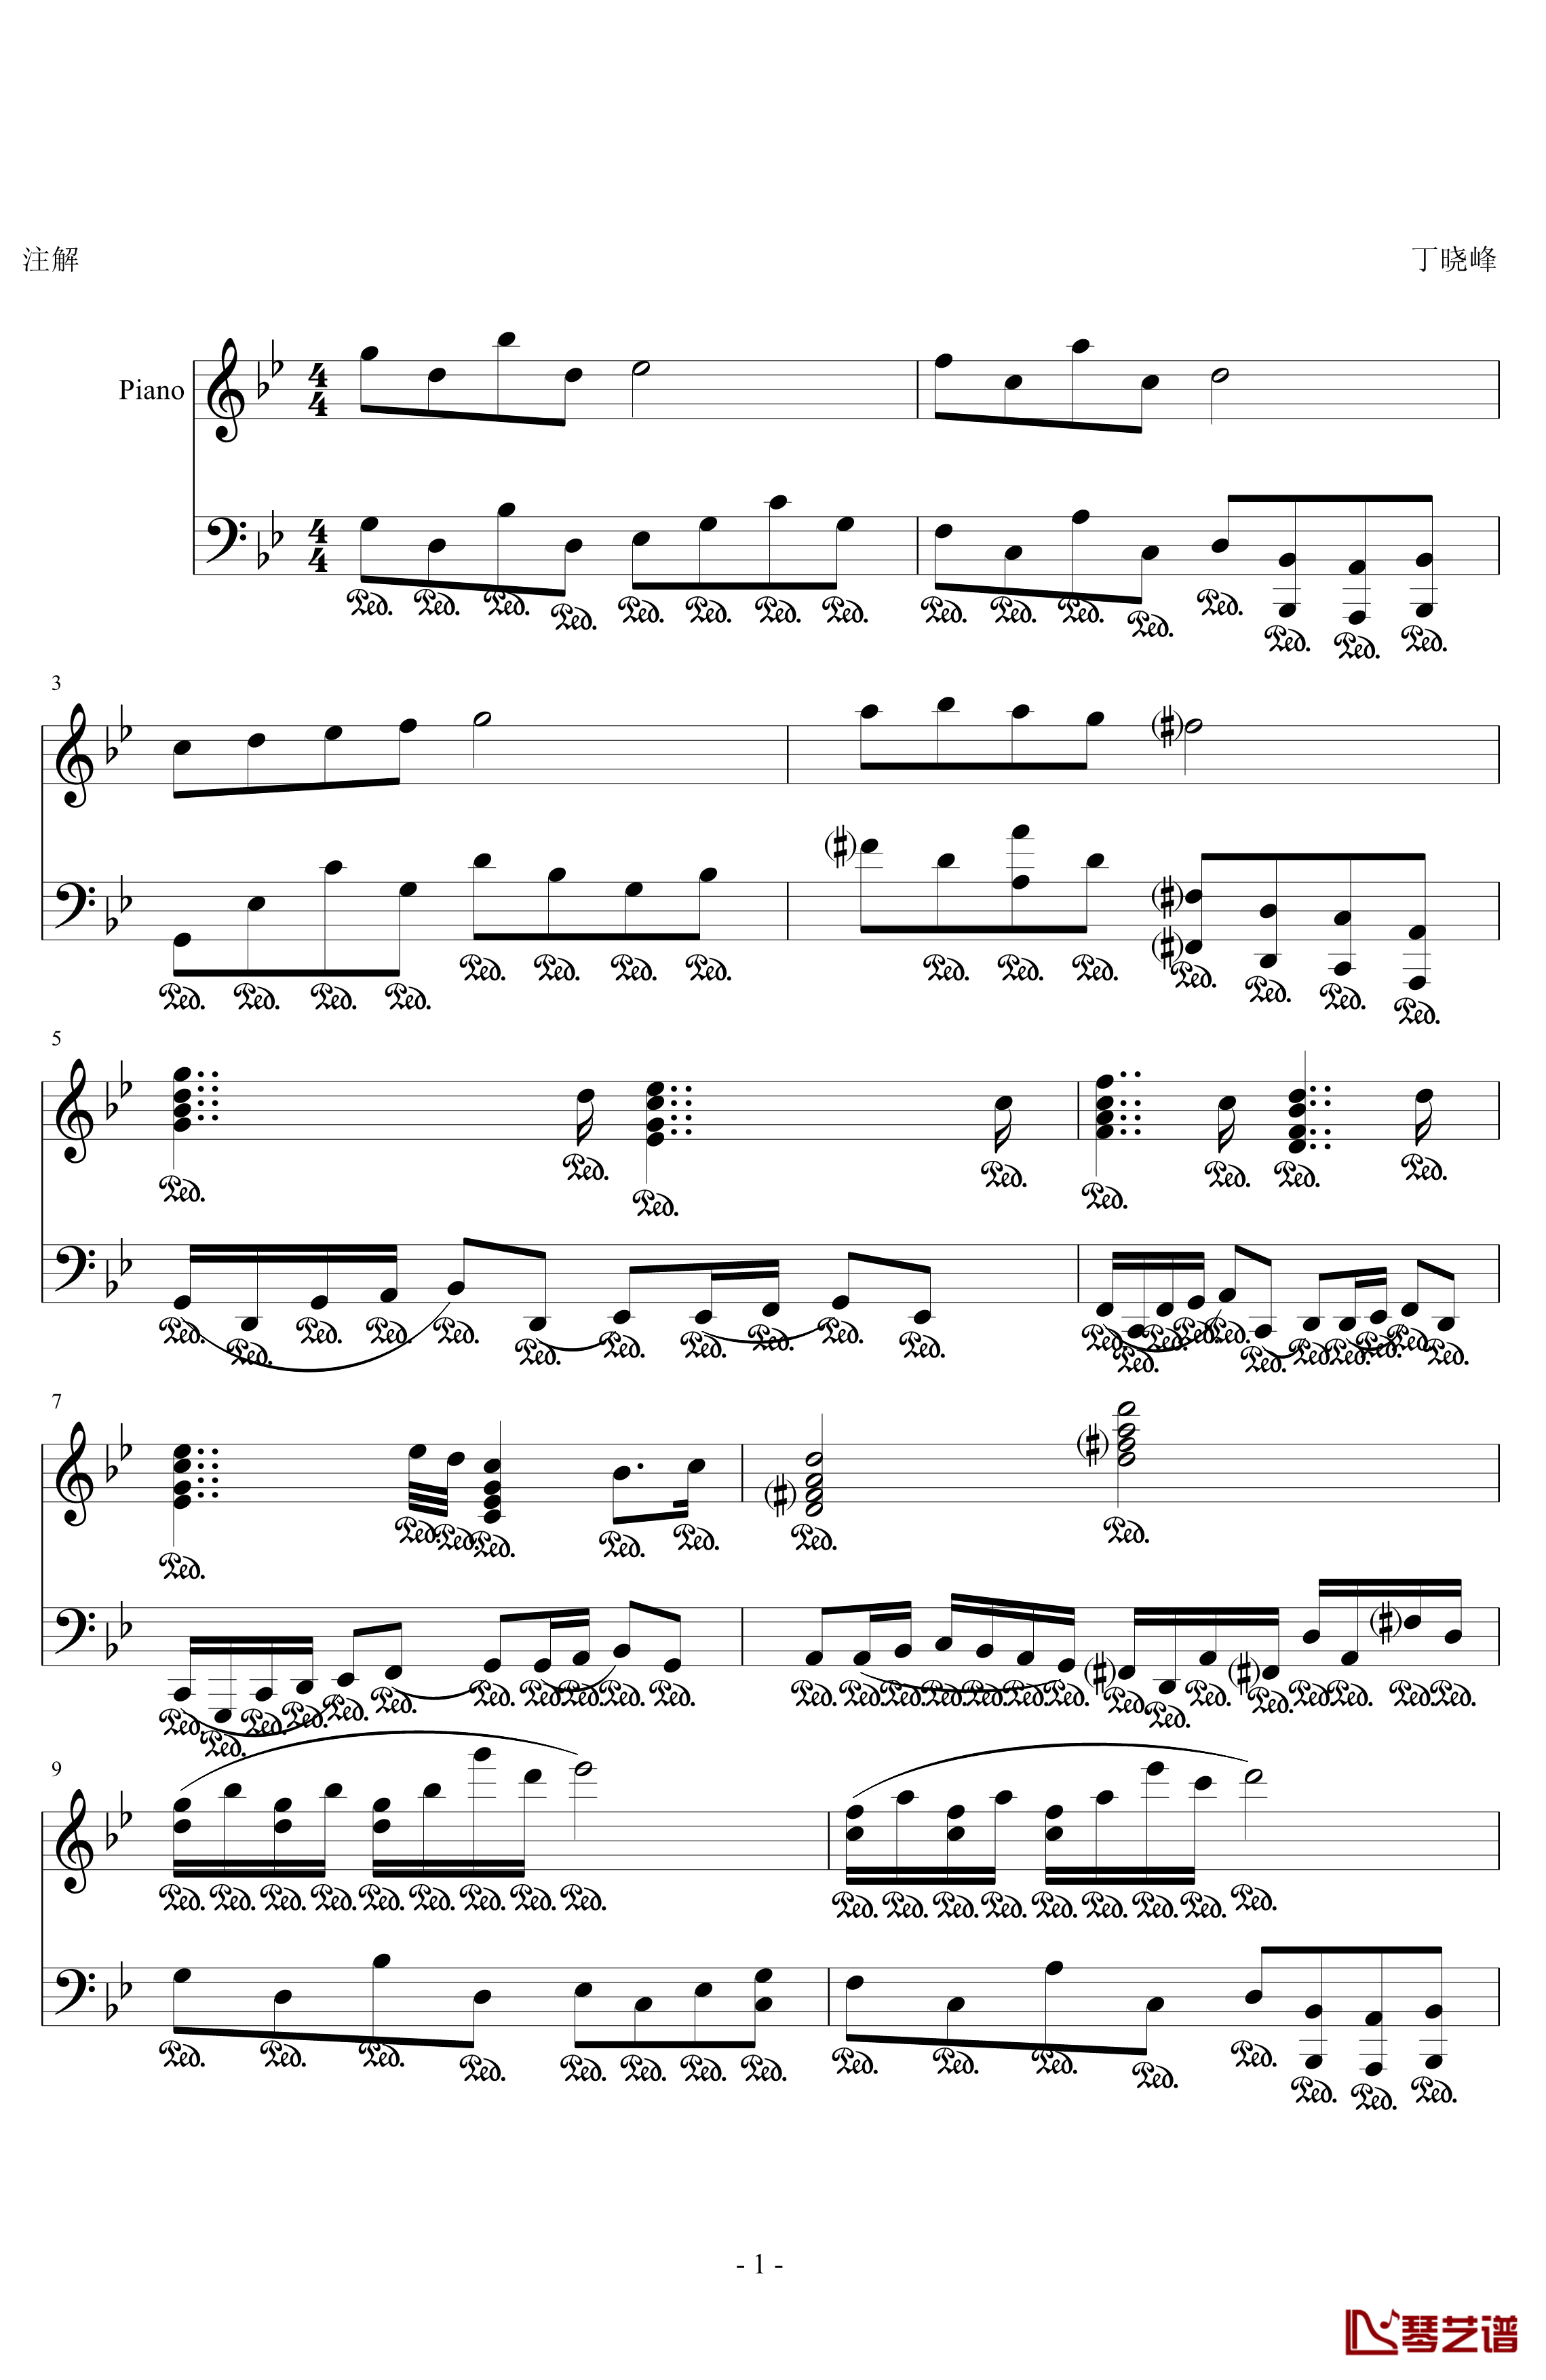 小变奏曲钢琴谱-丁晓峰1